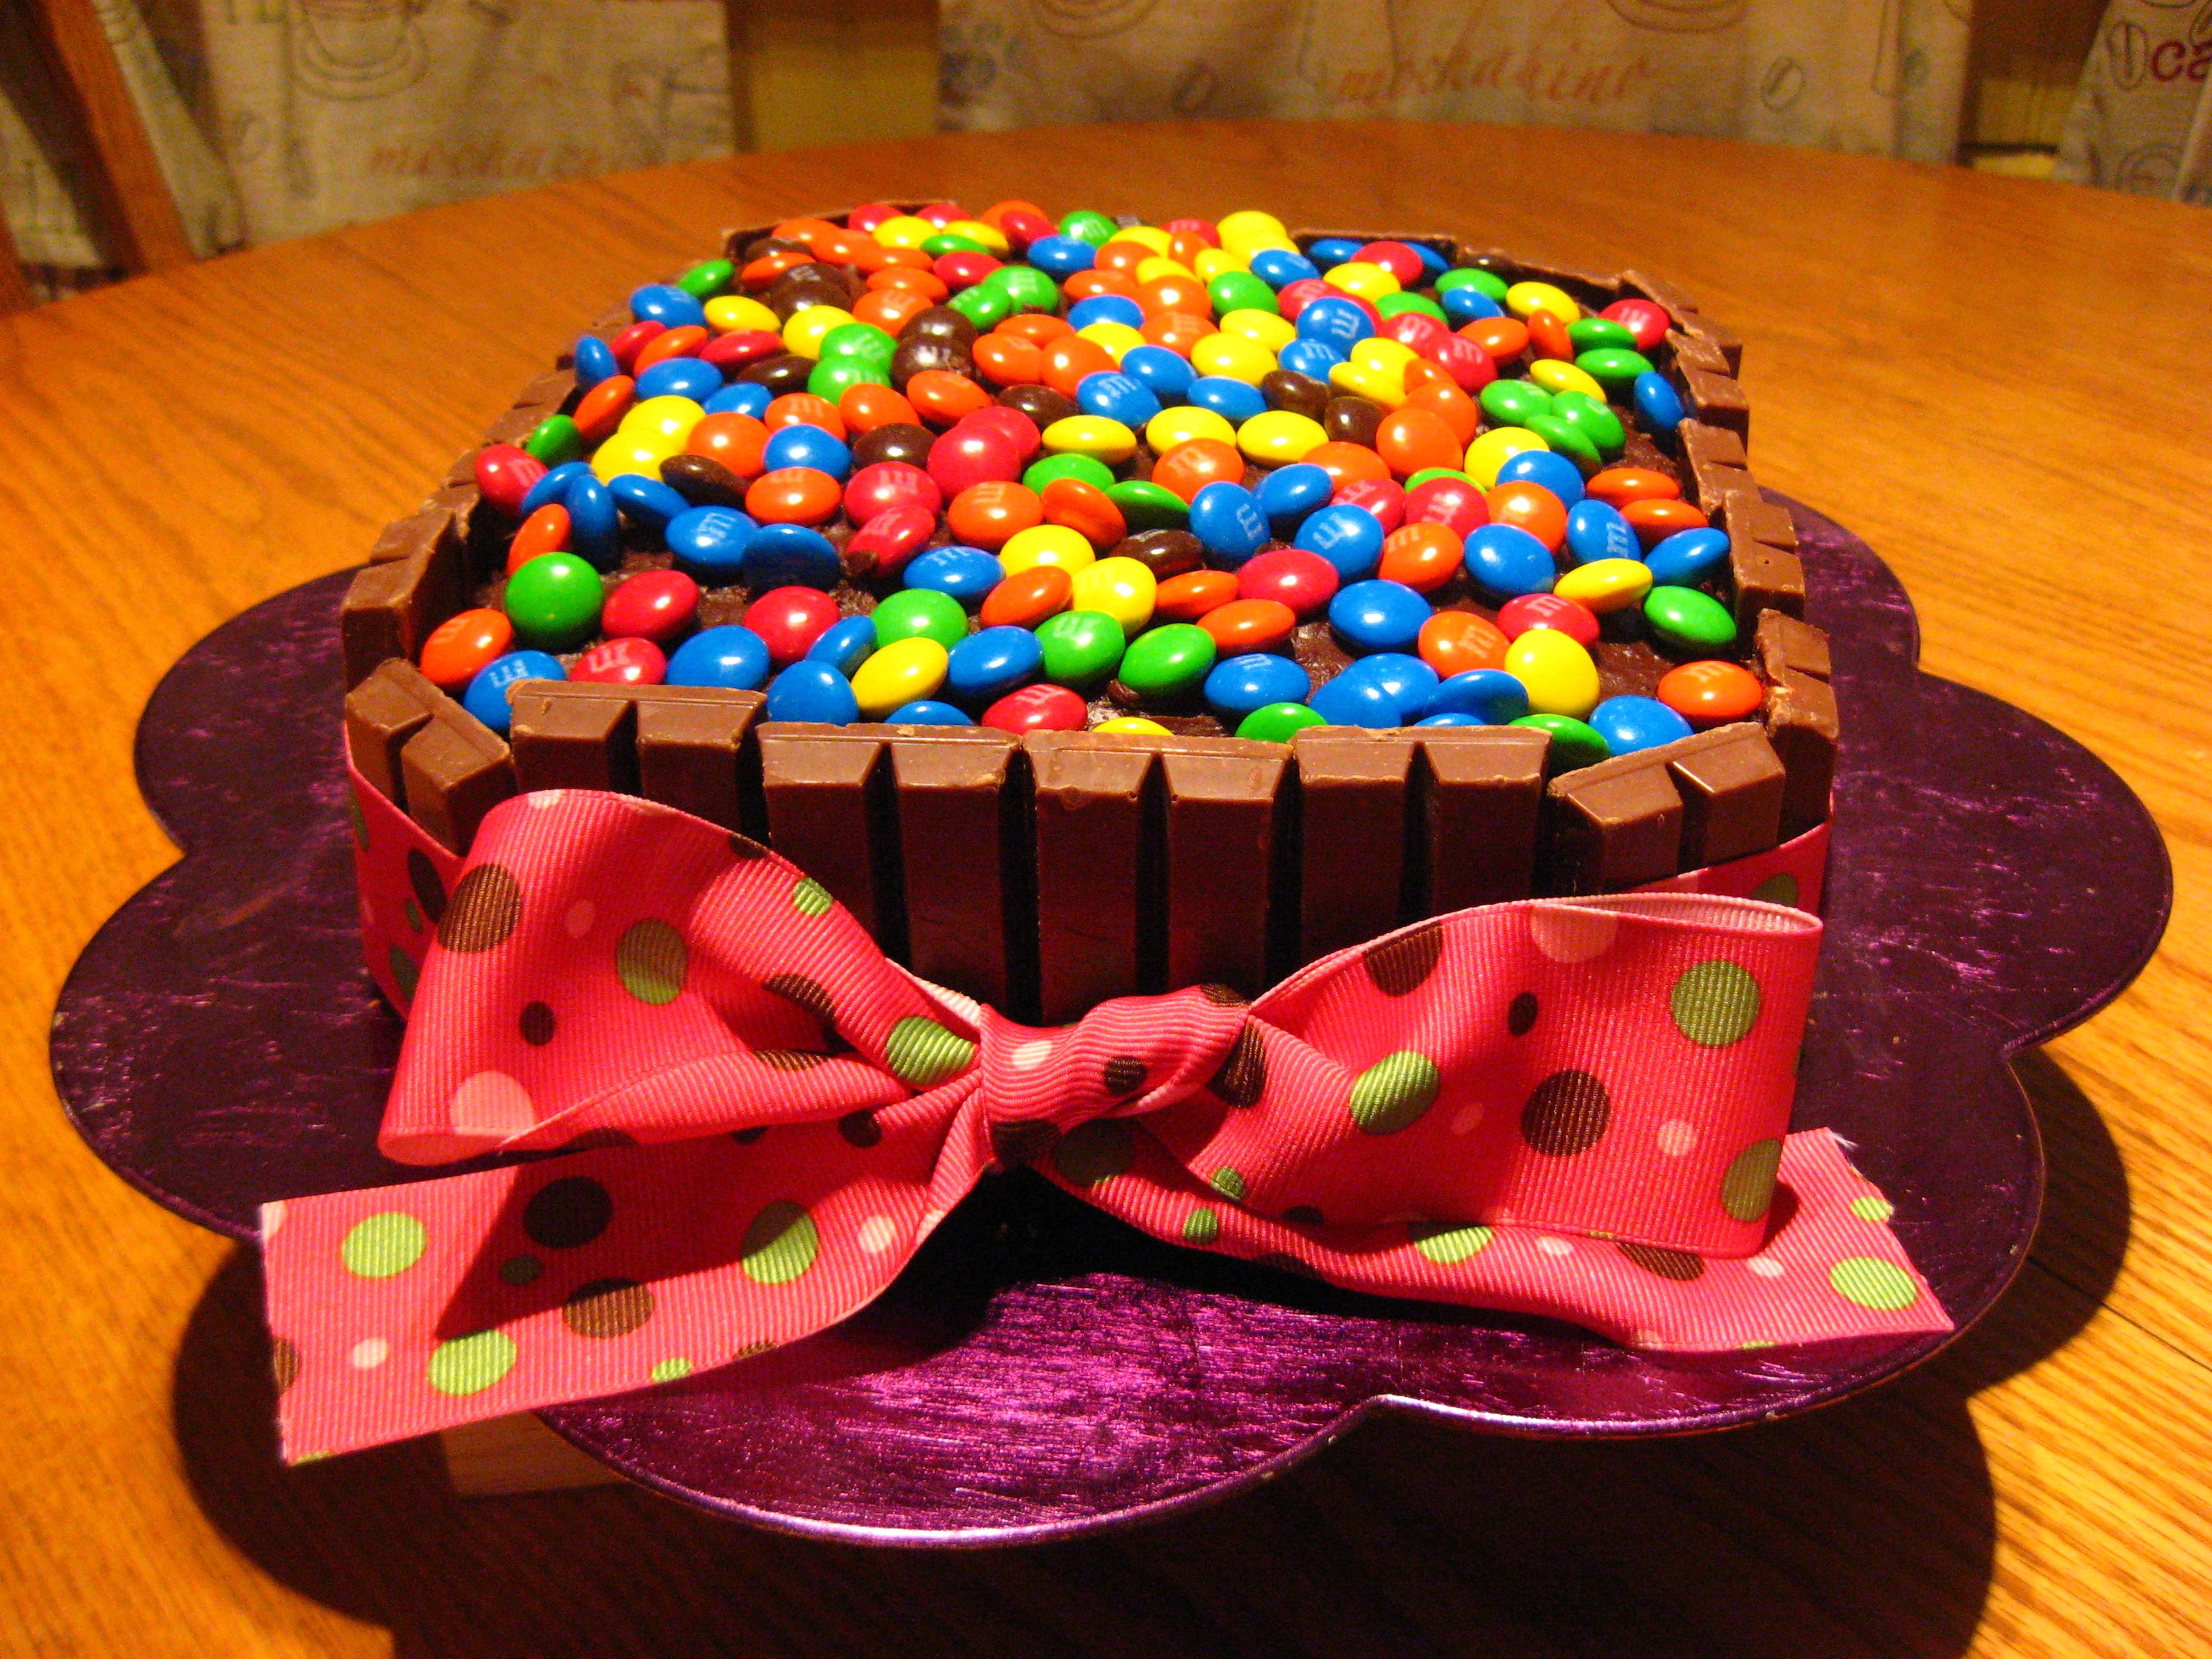 тортики на 11 лет девочке на день рождения